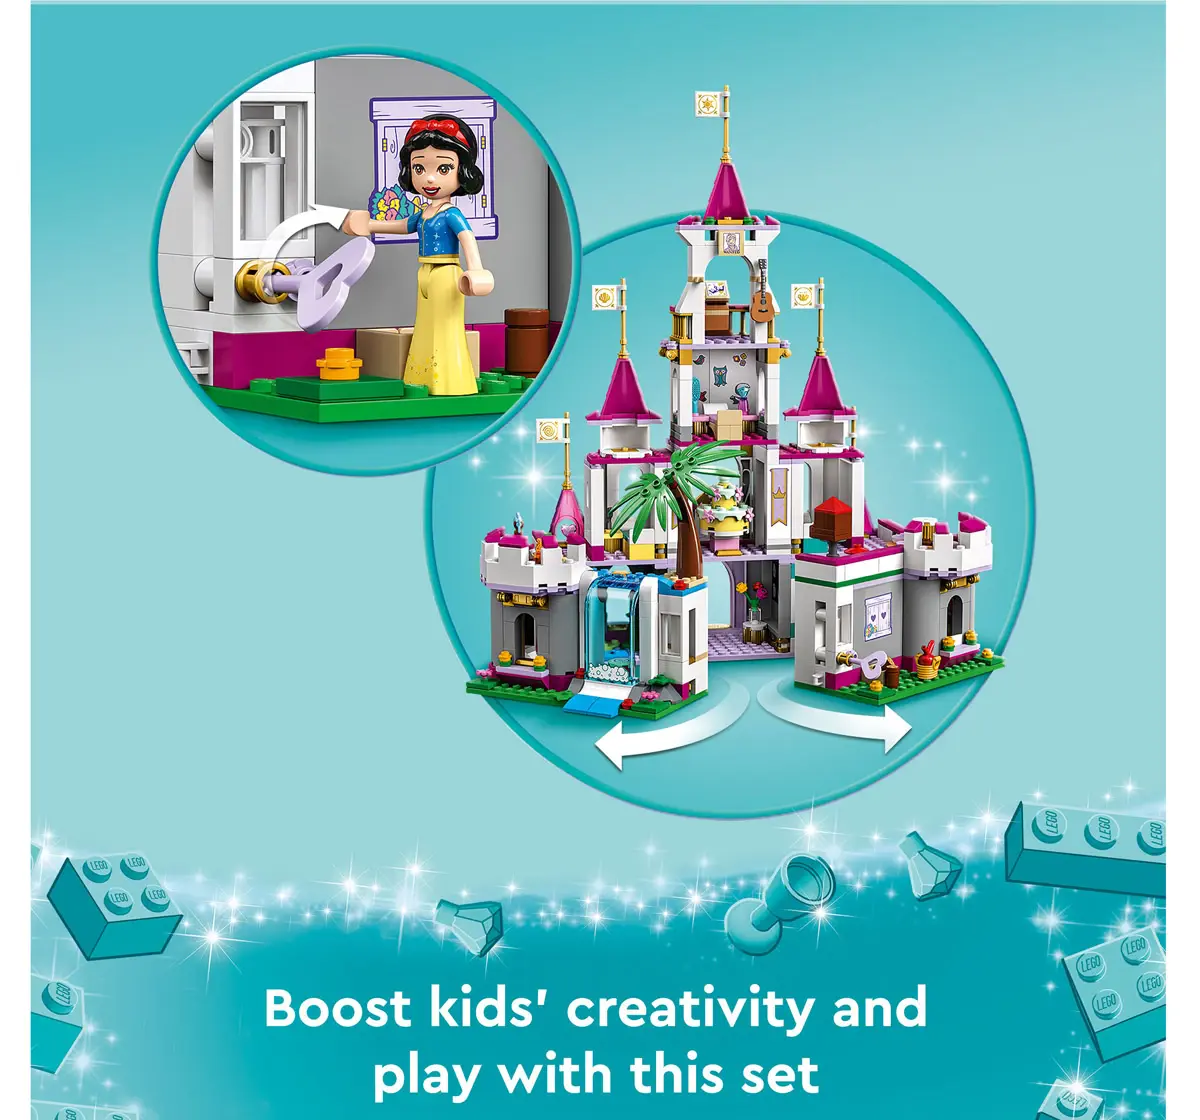 Lego Disney Princess Ultimate Adventure Castle 43205 Building Kit Multicolour For Kids Ages 6Y+ (698 Pieces)